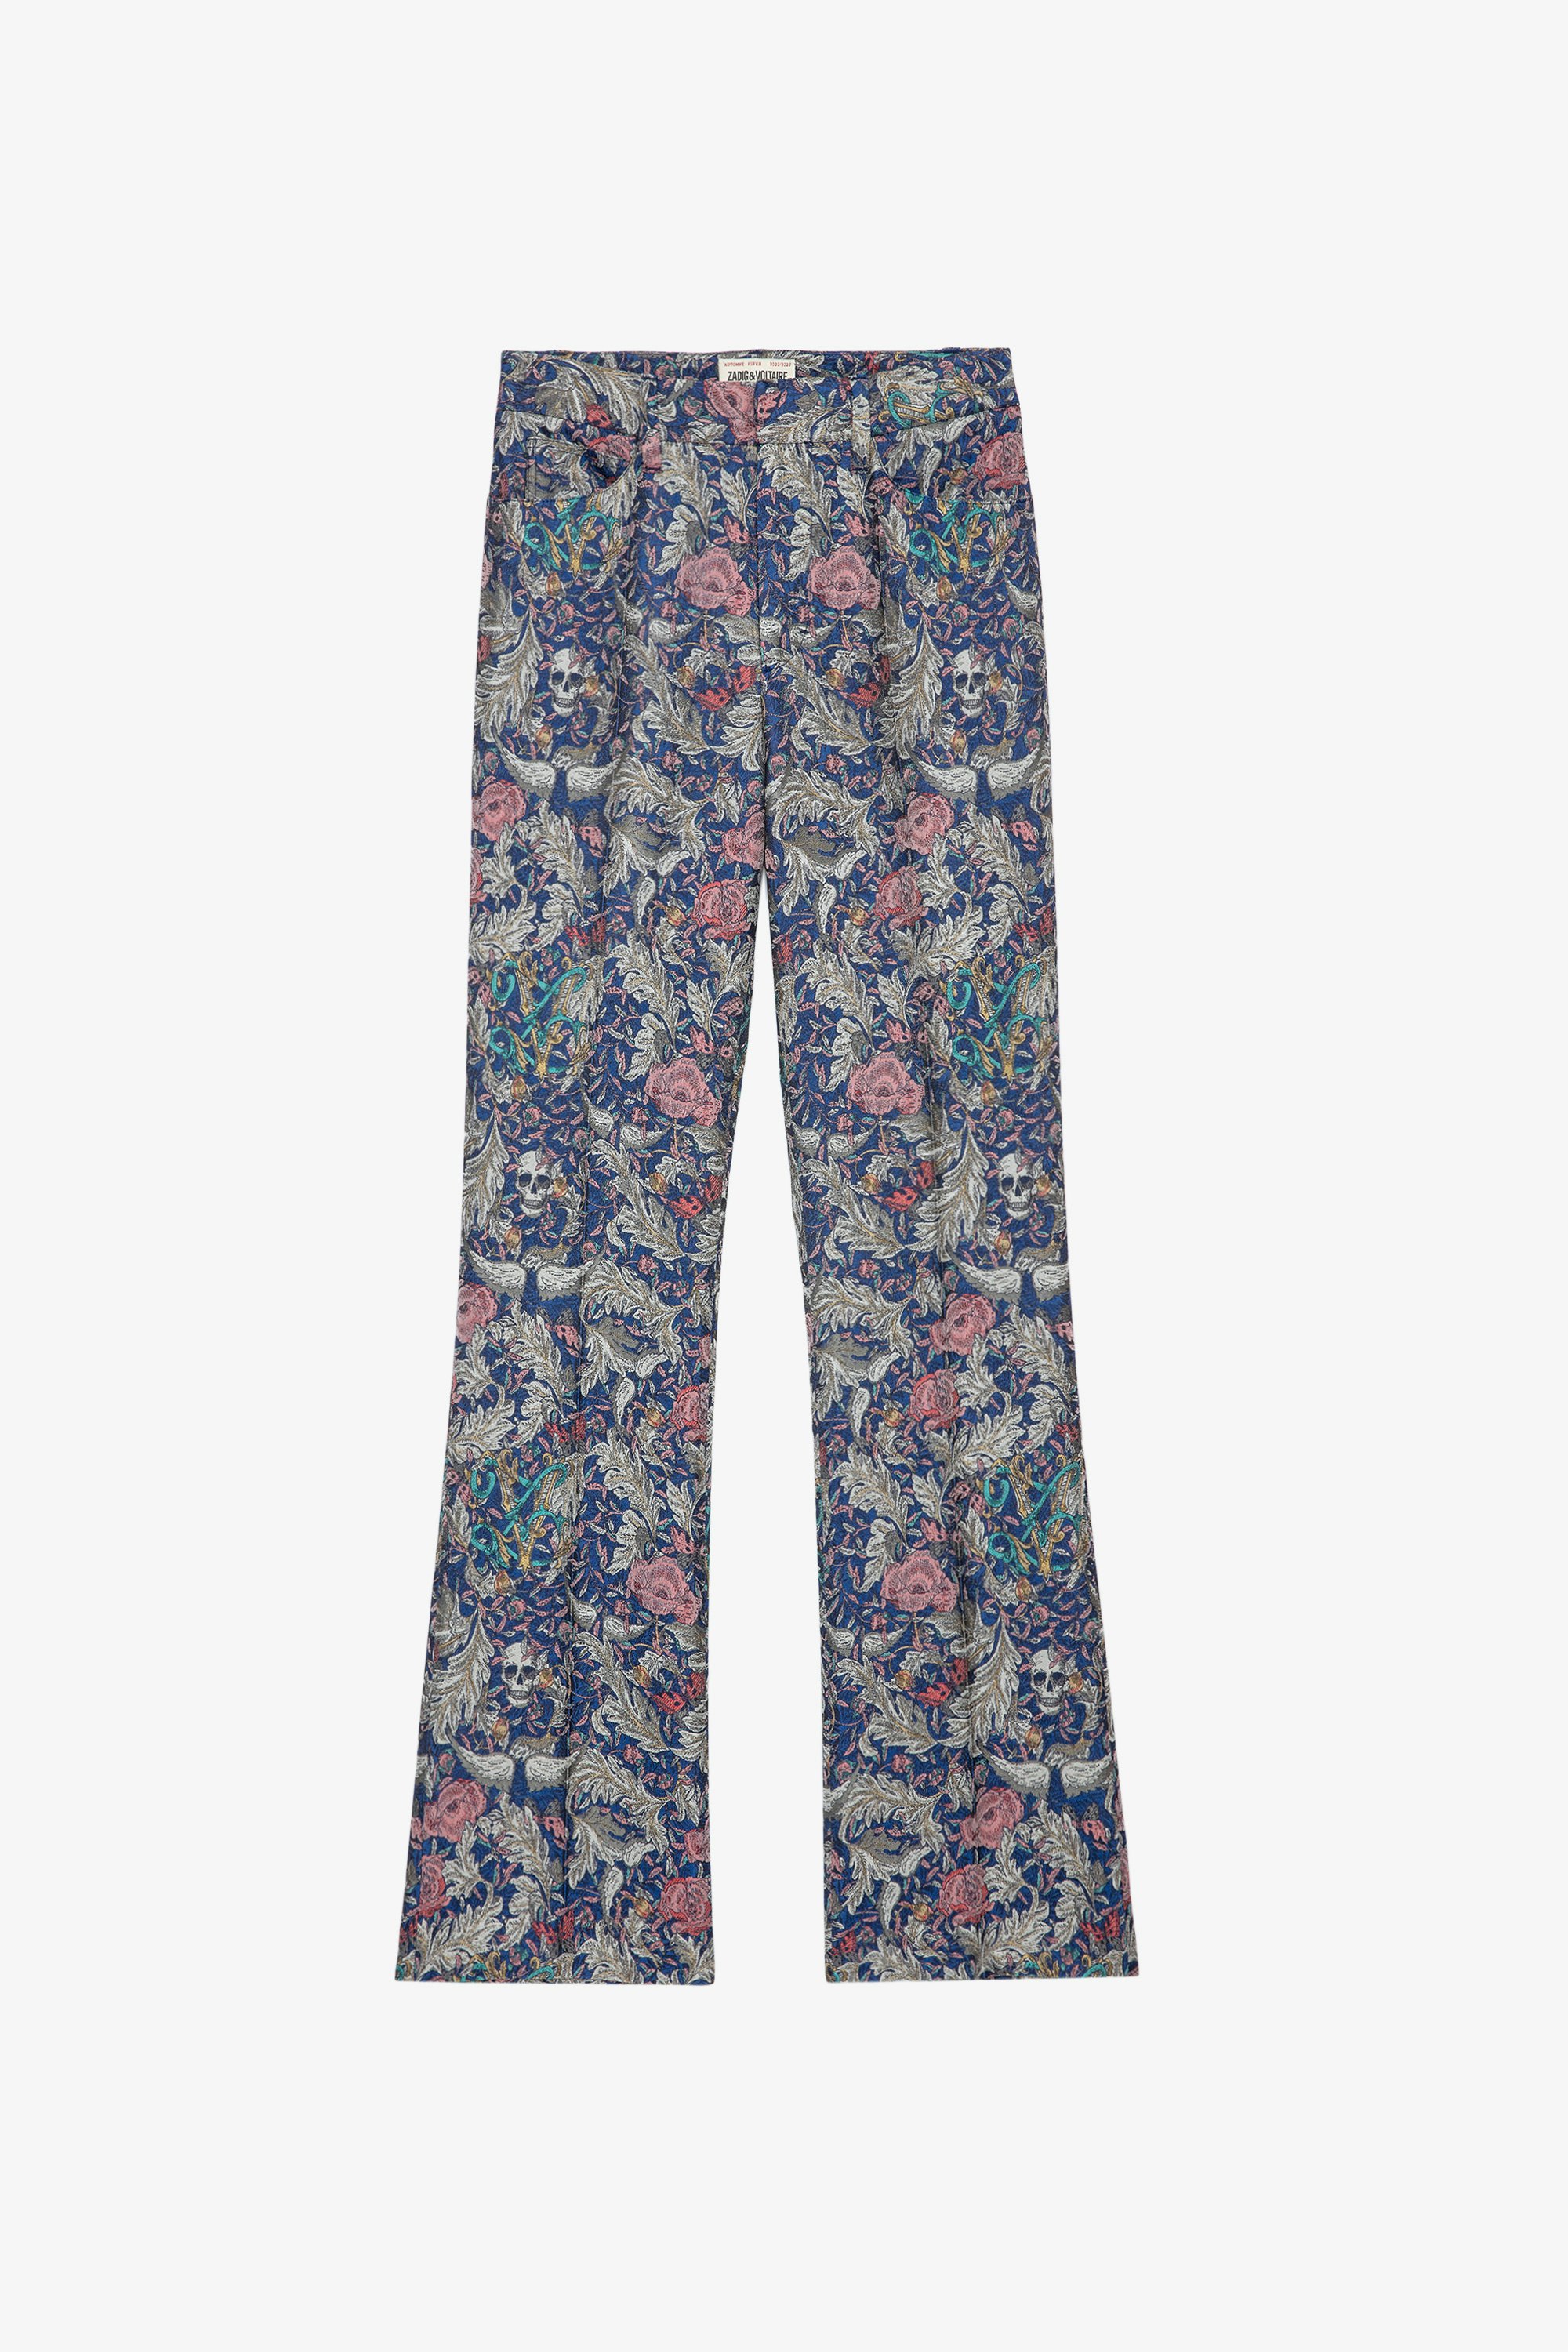 Pantalon Pistol Jac Pantalon bleu en jacquard à motifs fleuris femme 